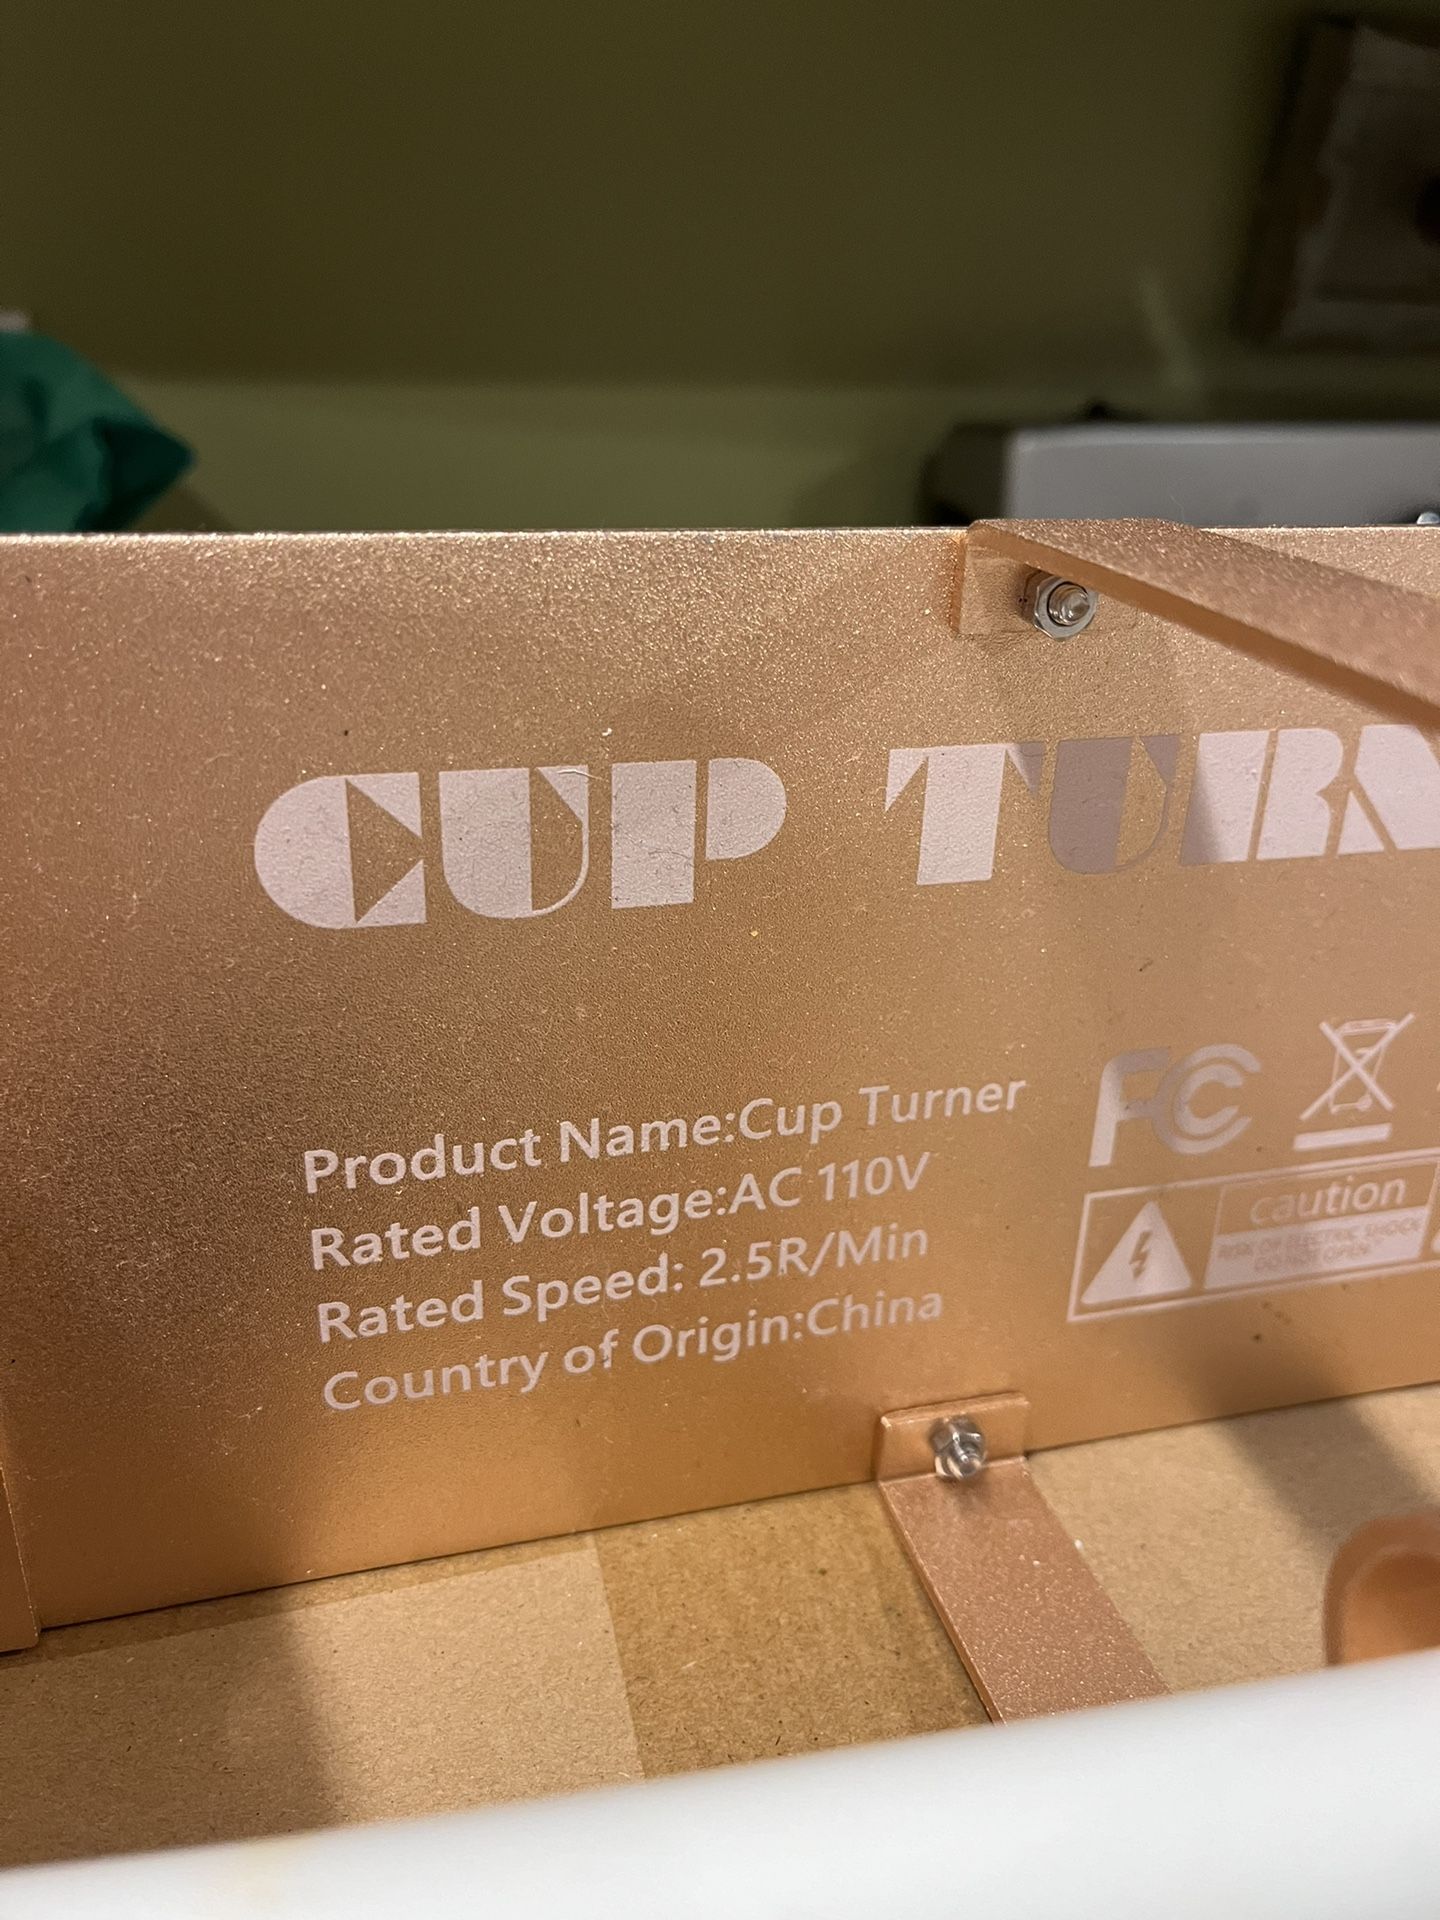 Tumbler Turner Starting Kit